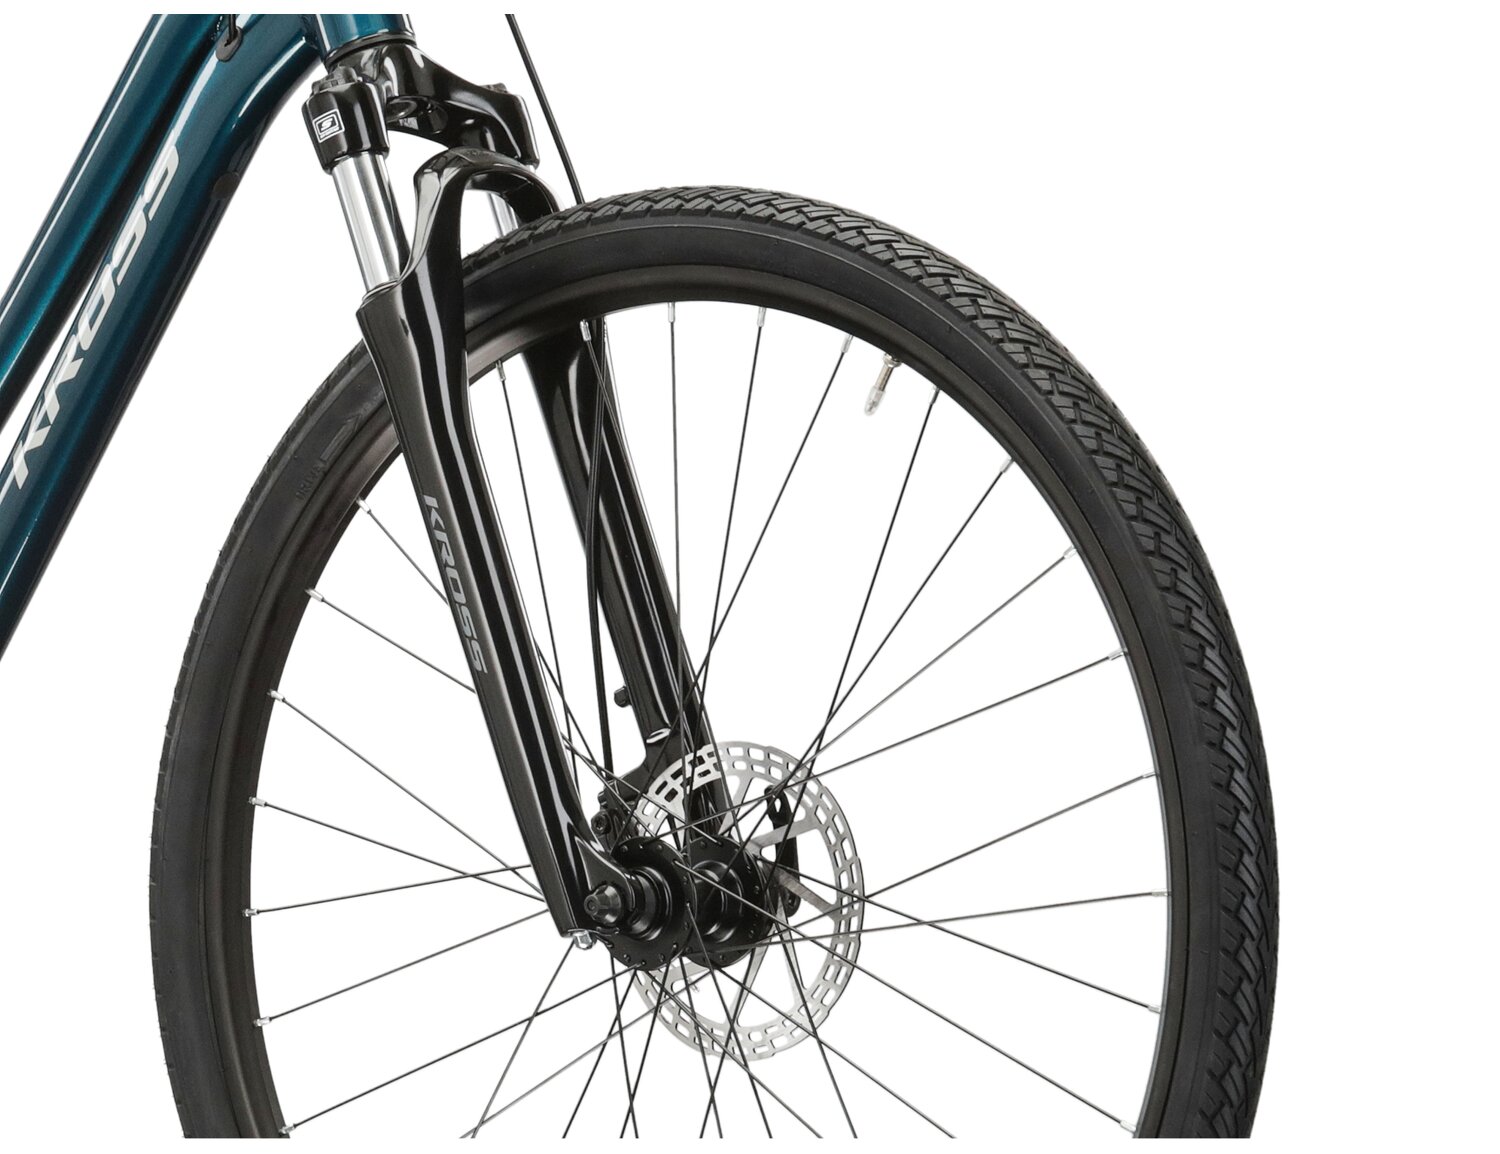 Aluminowa rama, amortyzowany widelec SR SUNTOUR NEX oraz opony Wanda w rowerze crossowym damskim KROSS Evado 3.0 